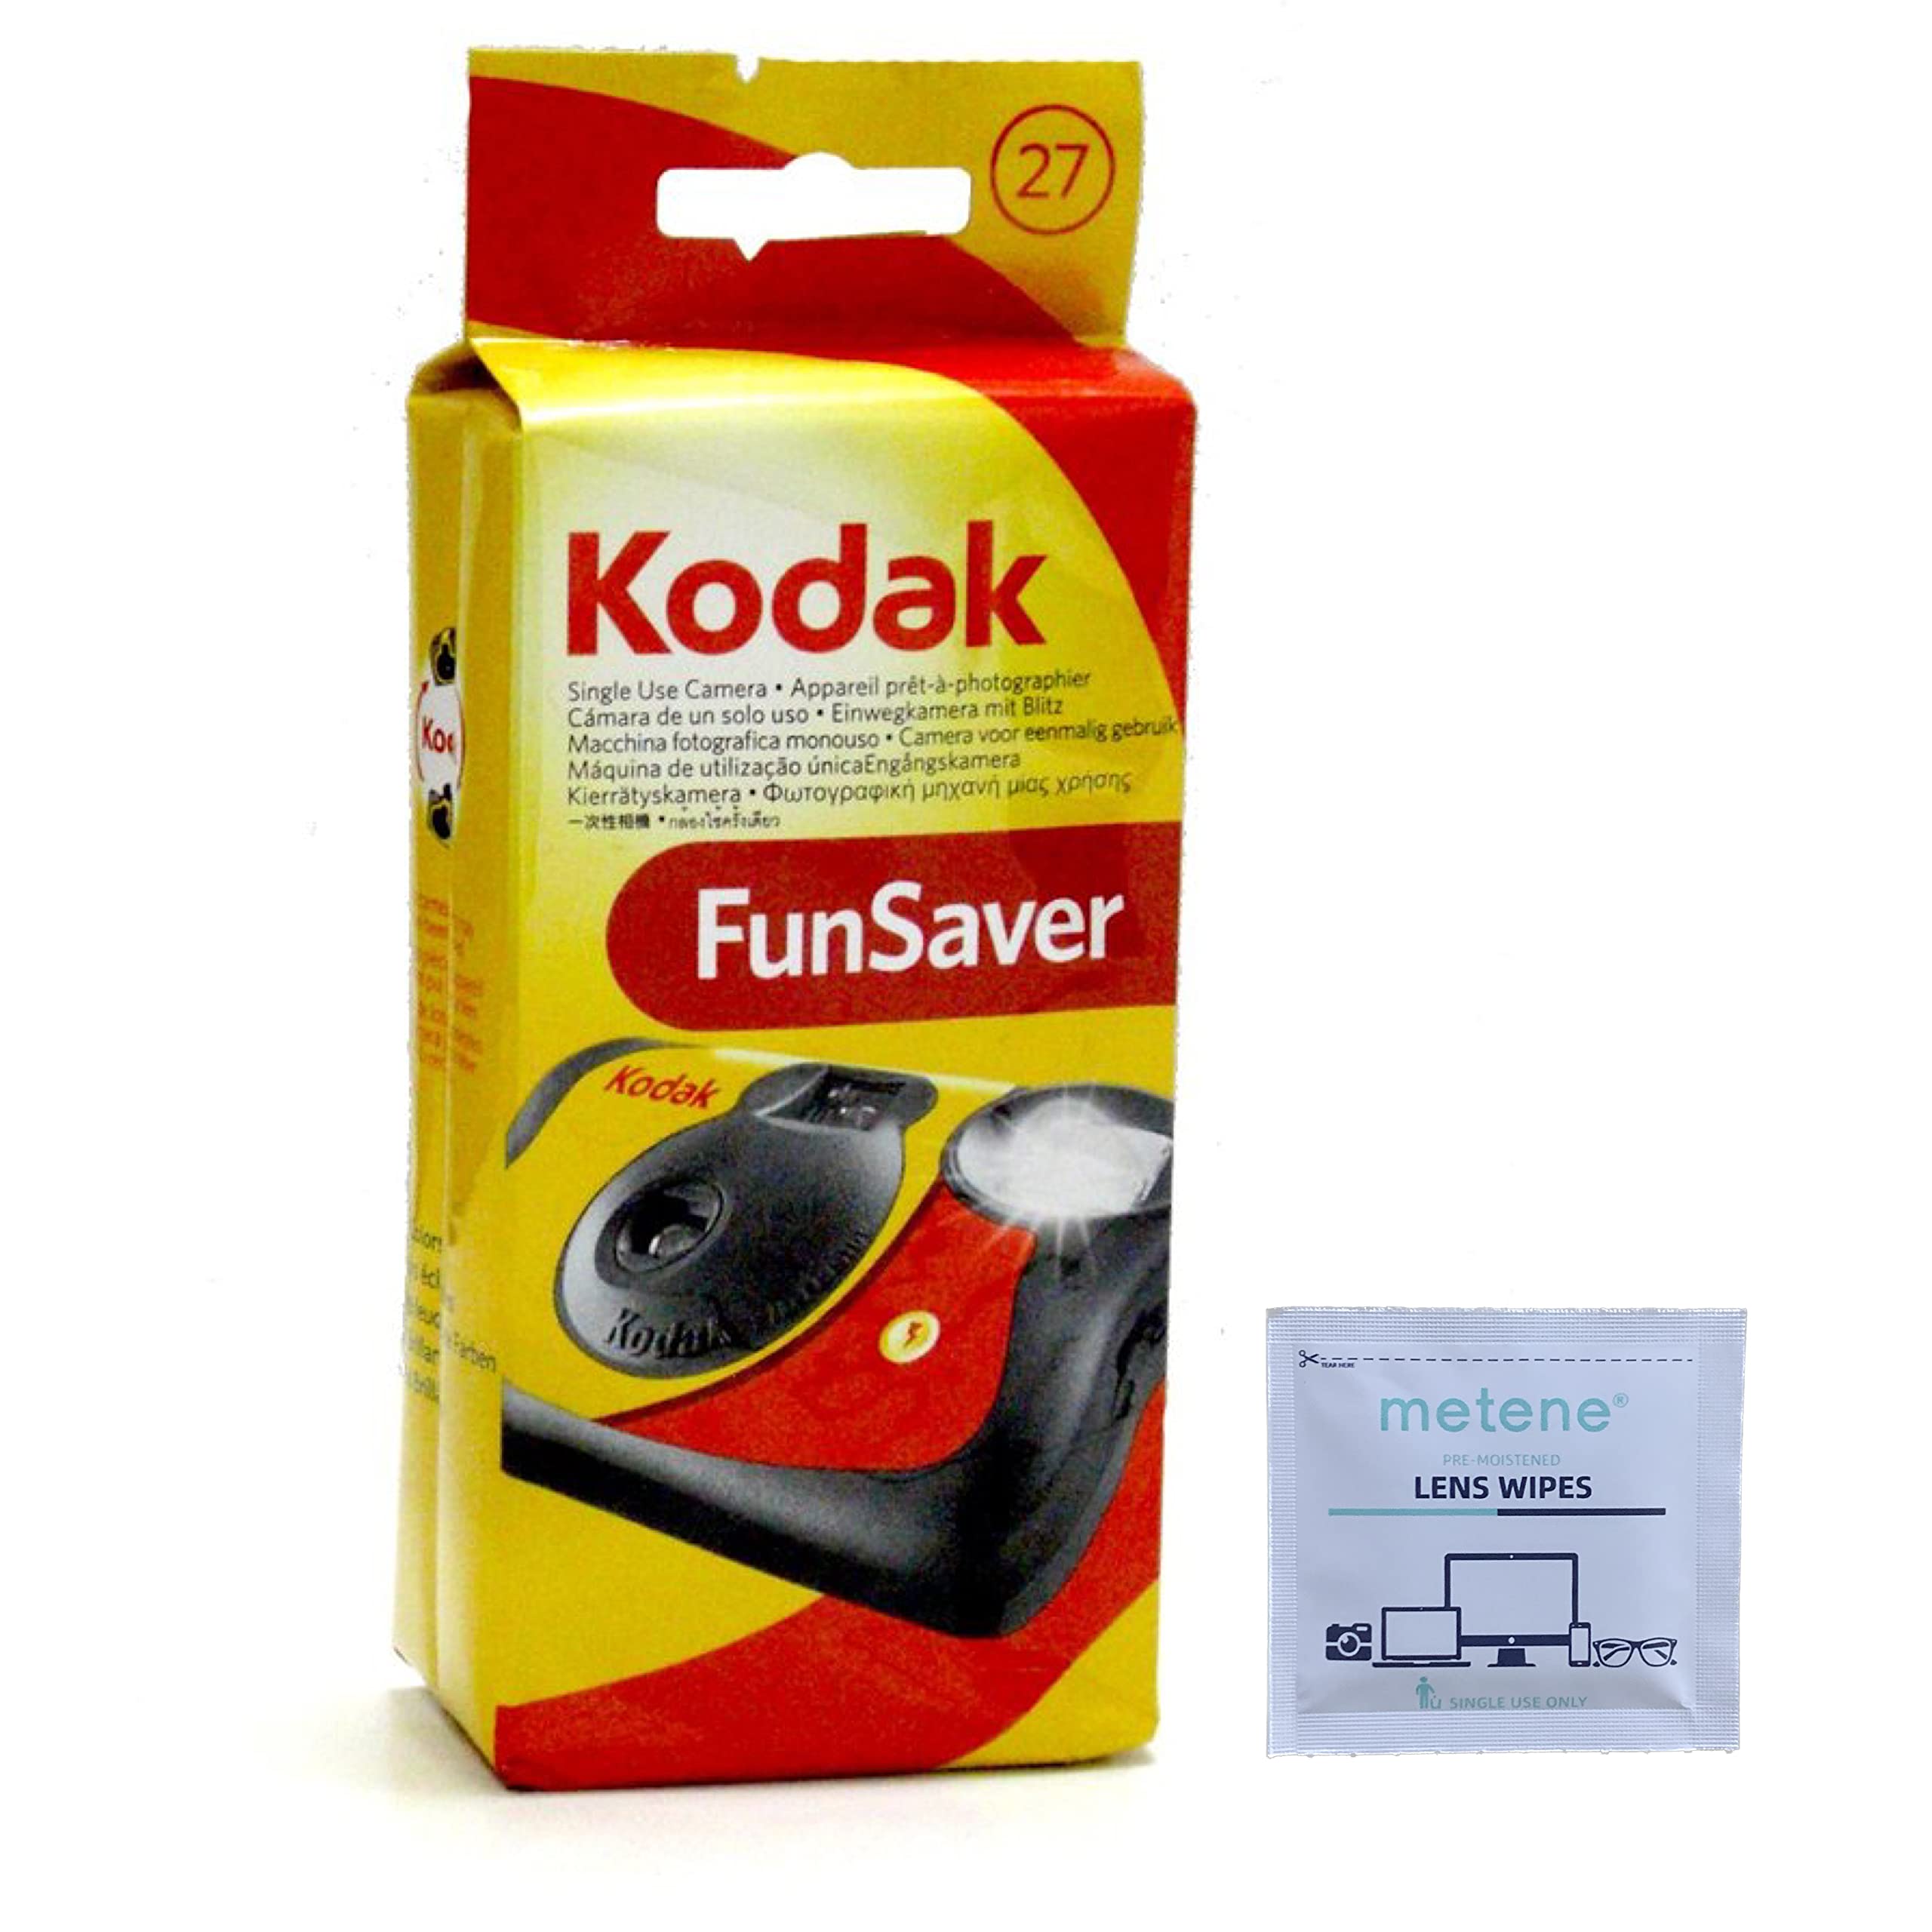 Kodak Пакет Fun Saver Single Use Camera (6 шт.) (6 шт.)...